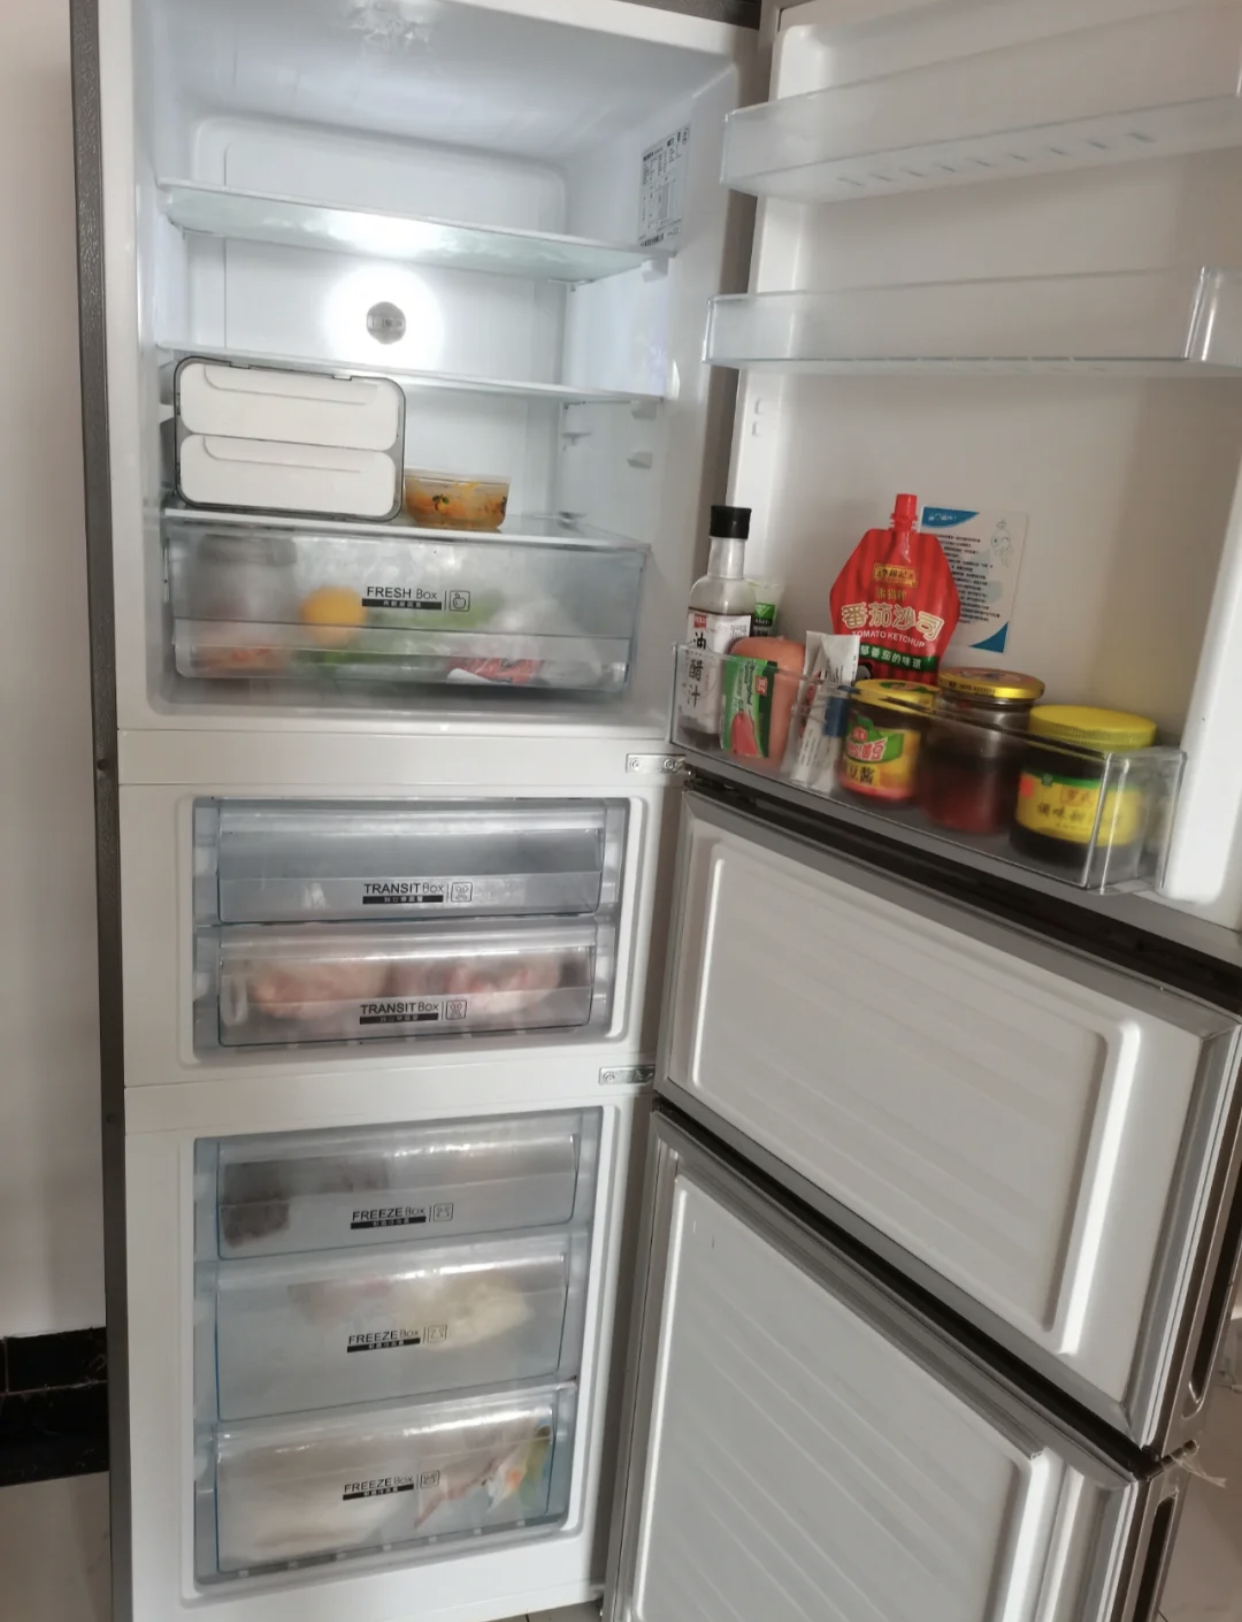 三开门的冰箱和对开门的冰箱，究竟哪个更值得投入？来谈谈区别